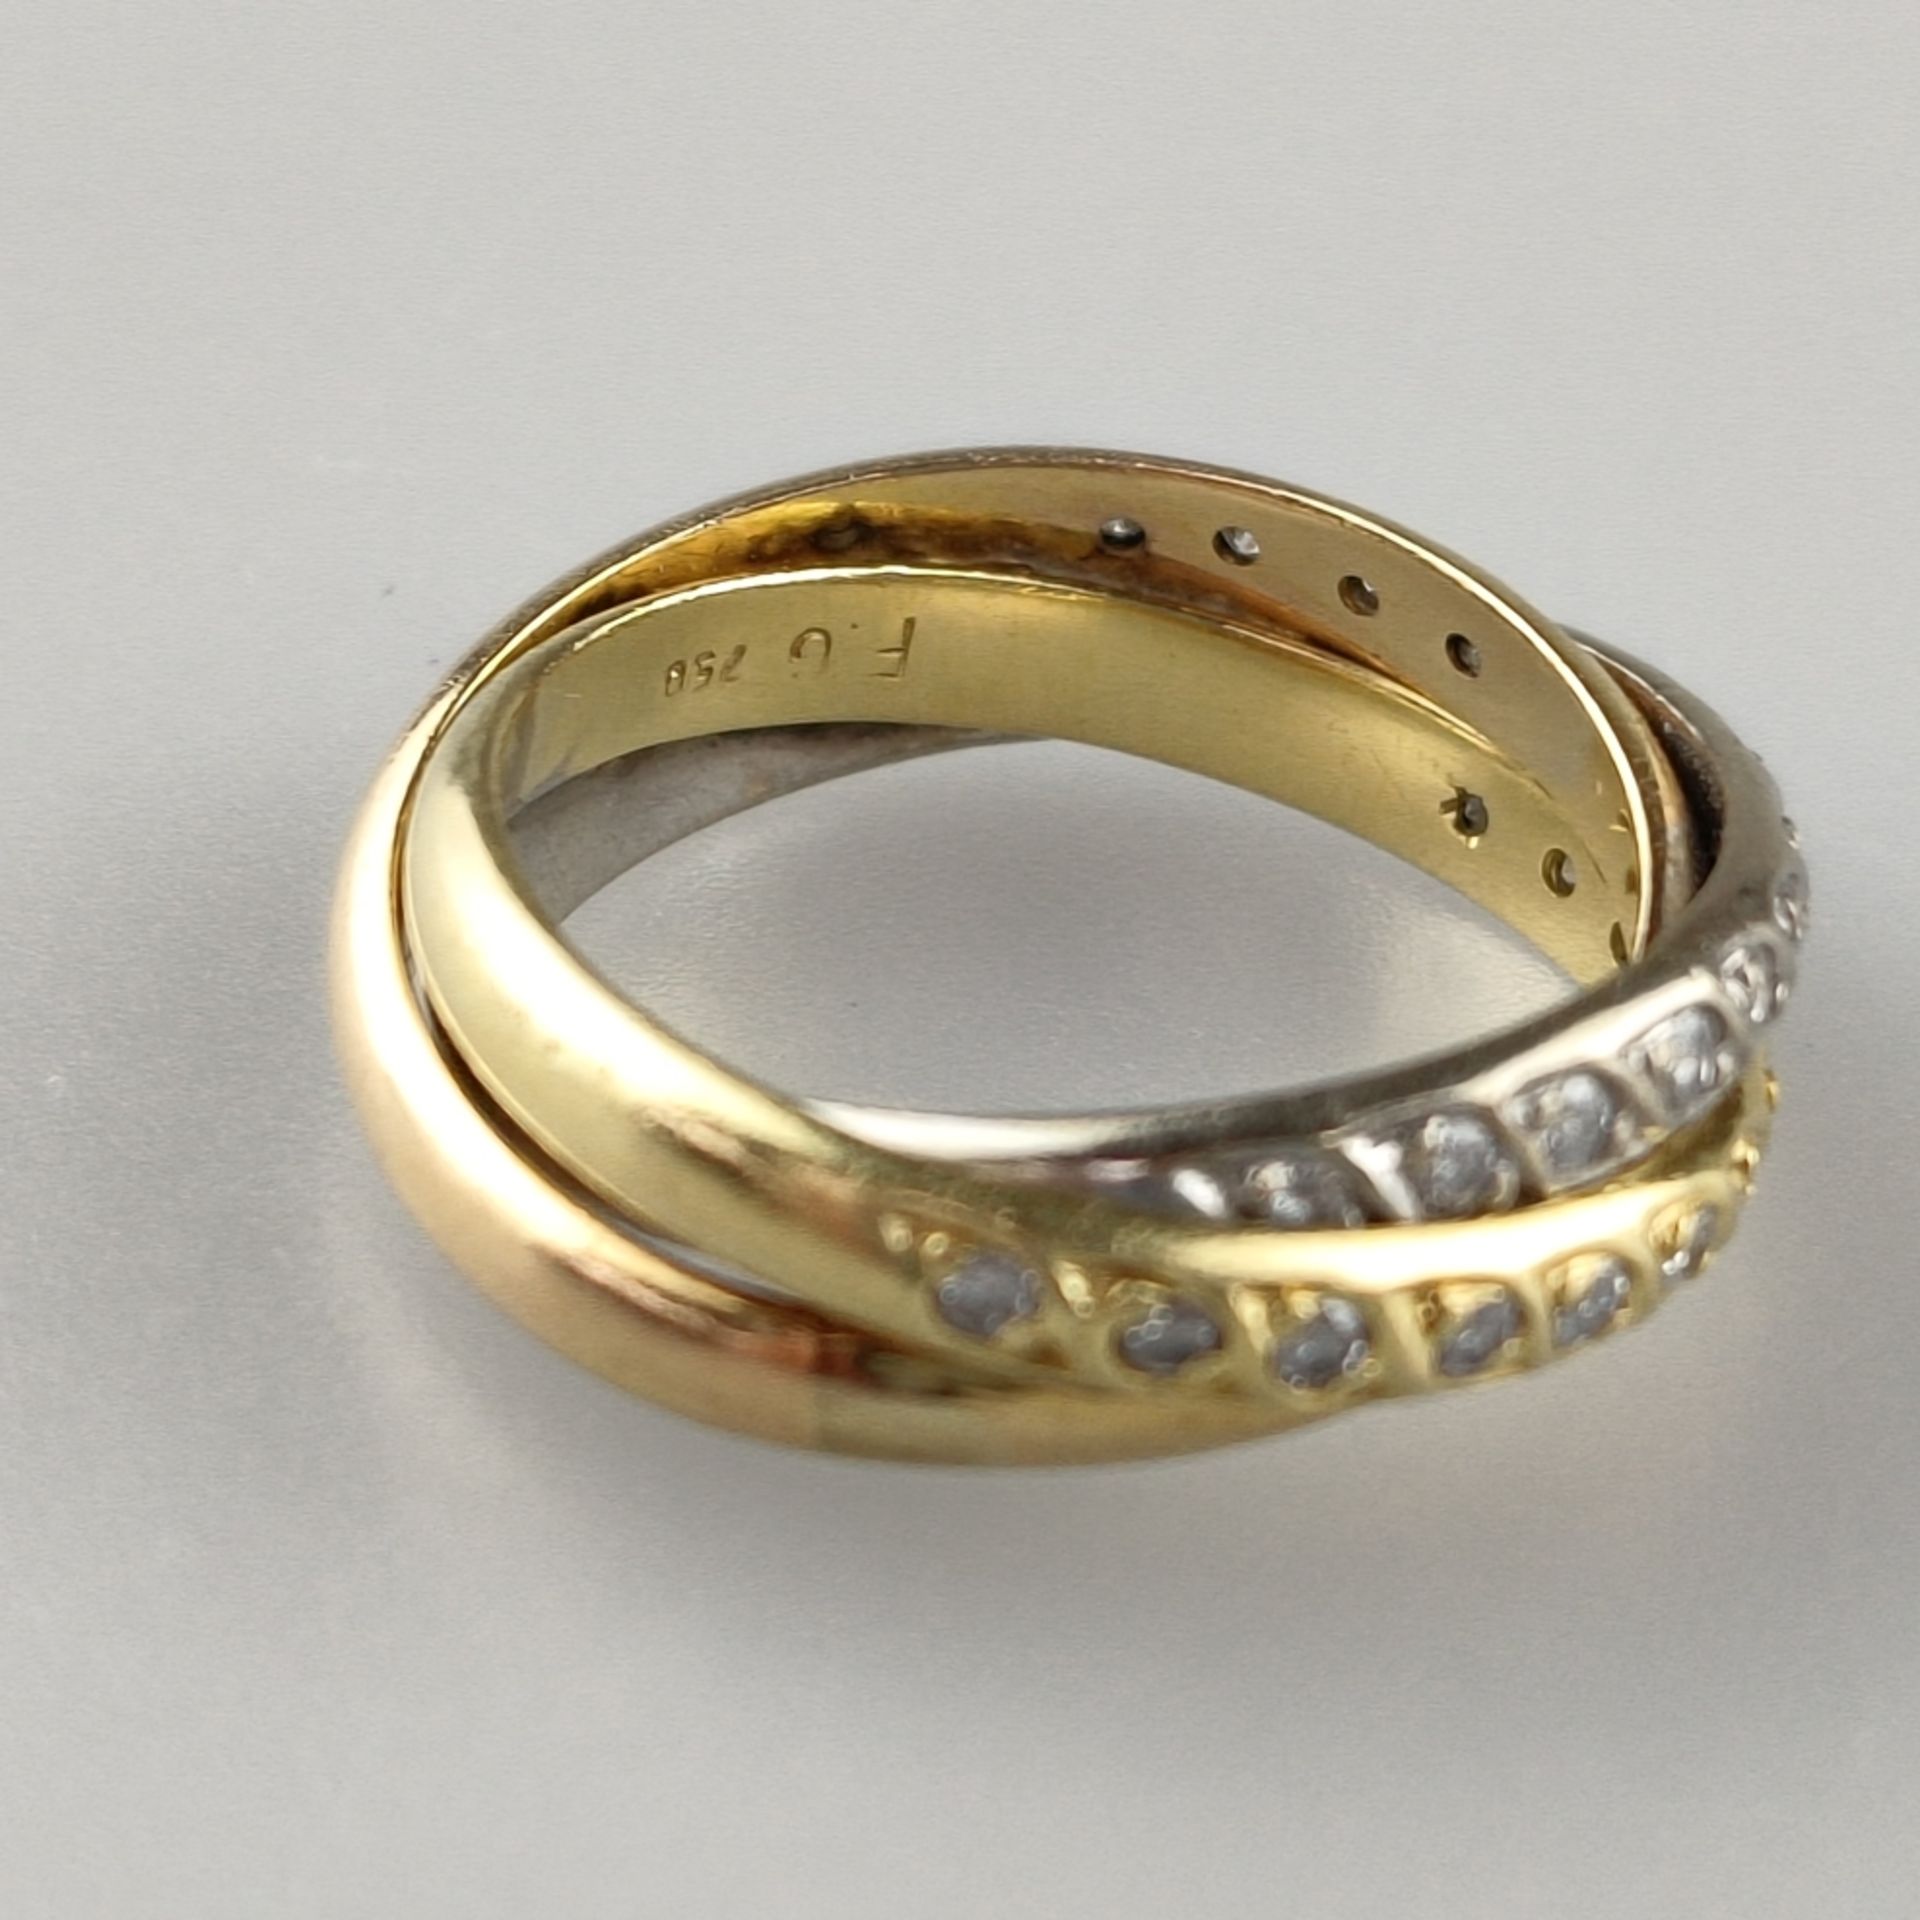 Trinity-Ring mit Diamanten - dreifarbig: Weiß-/Rosé-/Gelbgold 750/000 (18 K), gestempelt, ausgefass - Bild 4 aus 5